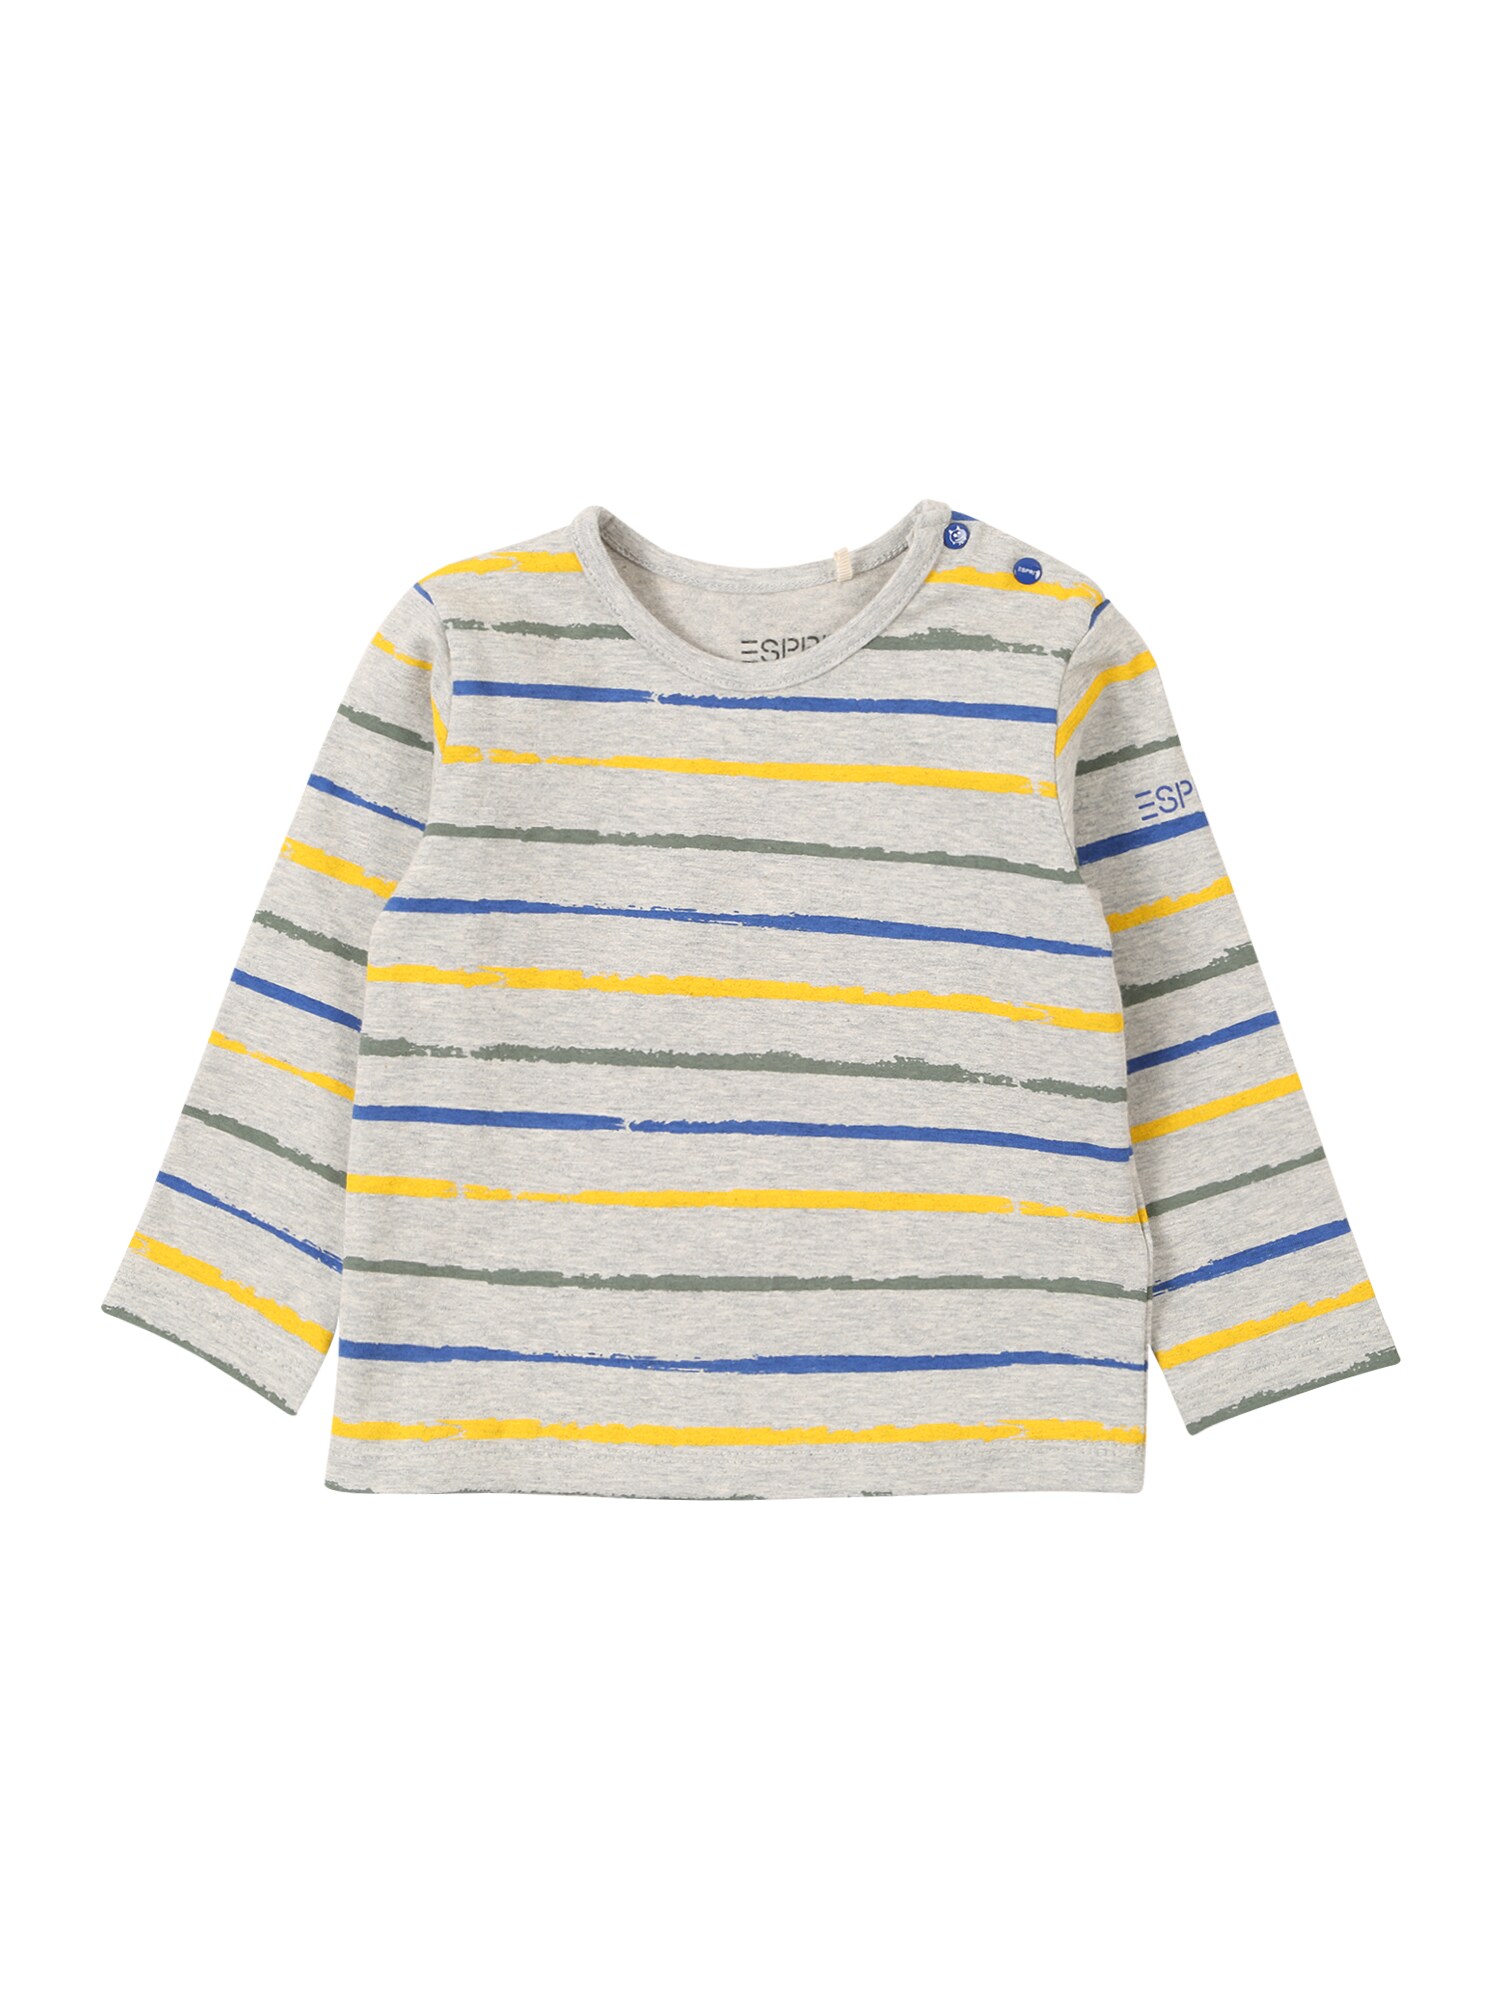 ESPRIT Marškinėliai  šviesiai pilka / geltona / alyvuogių spalva / mėlyna